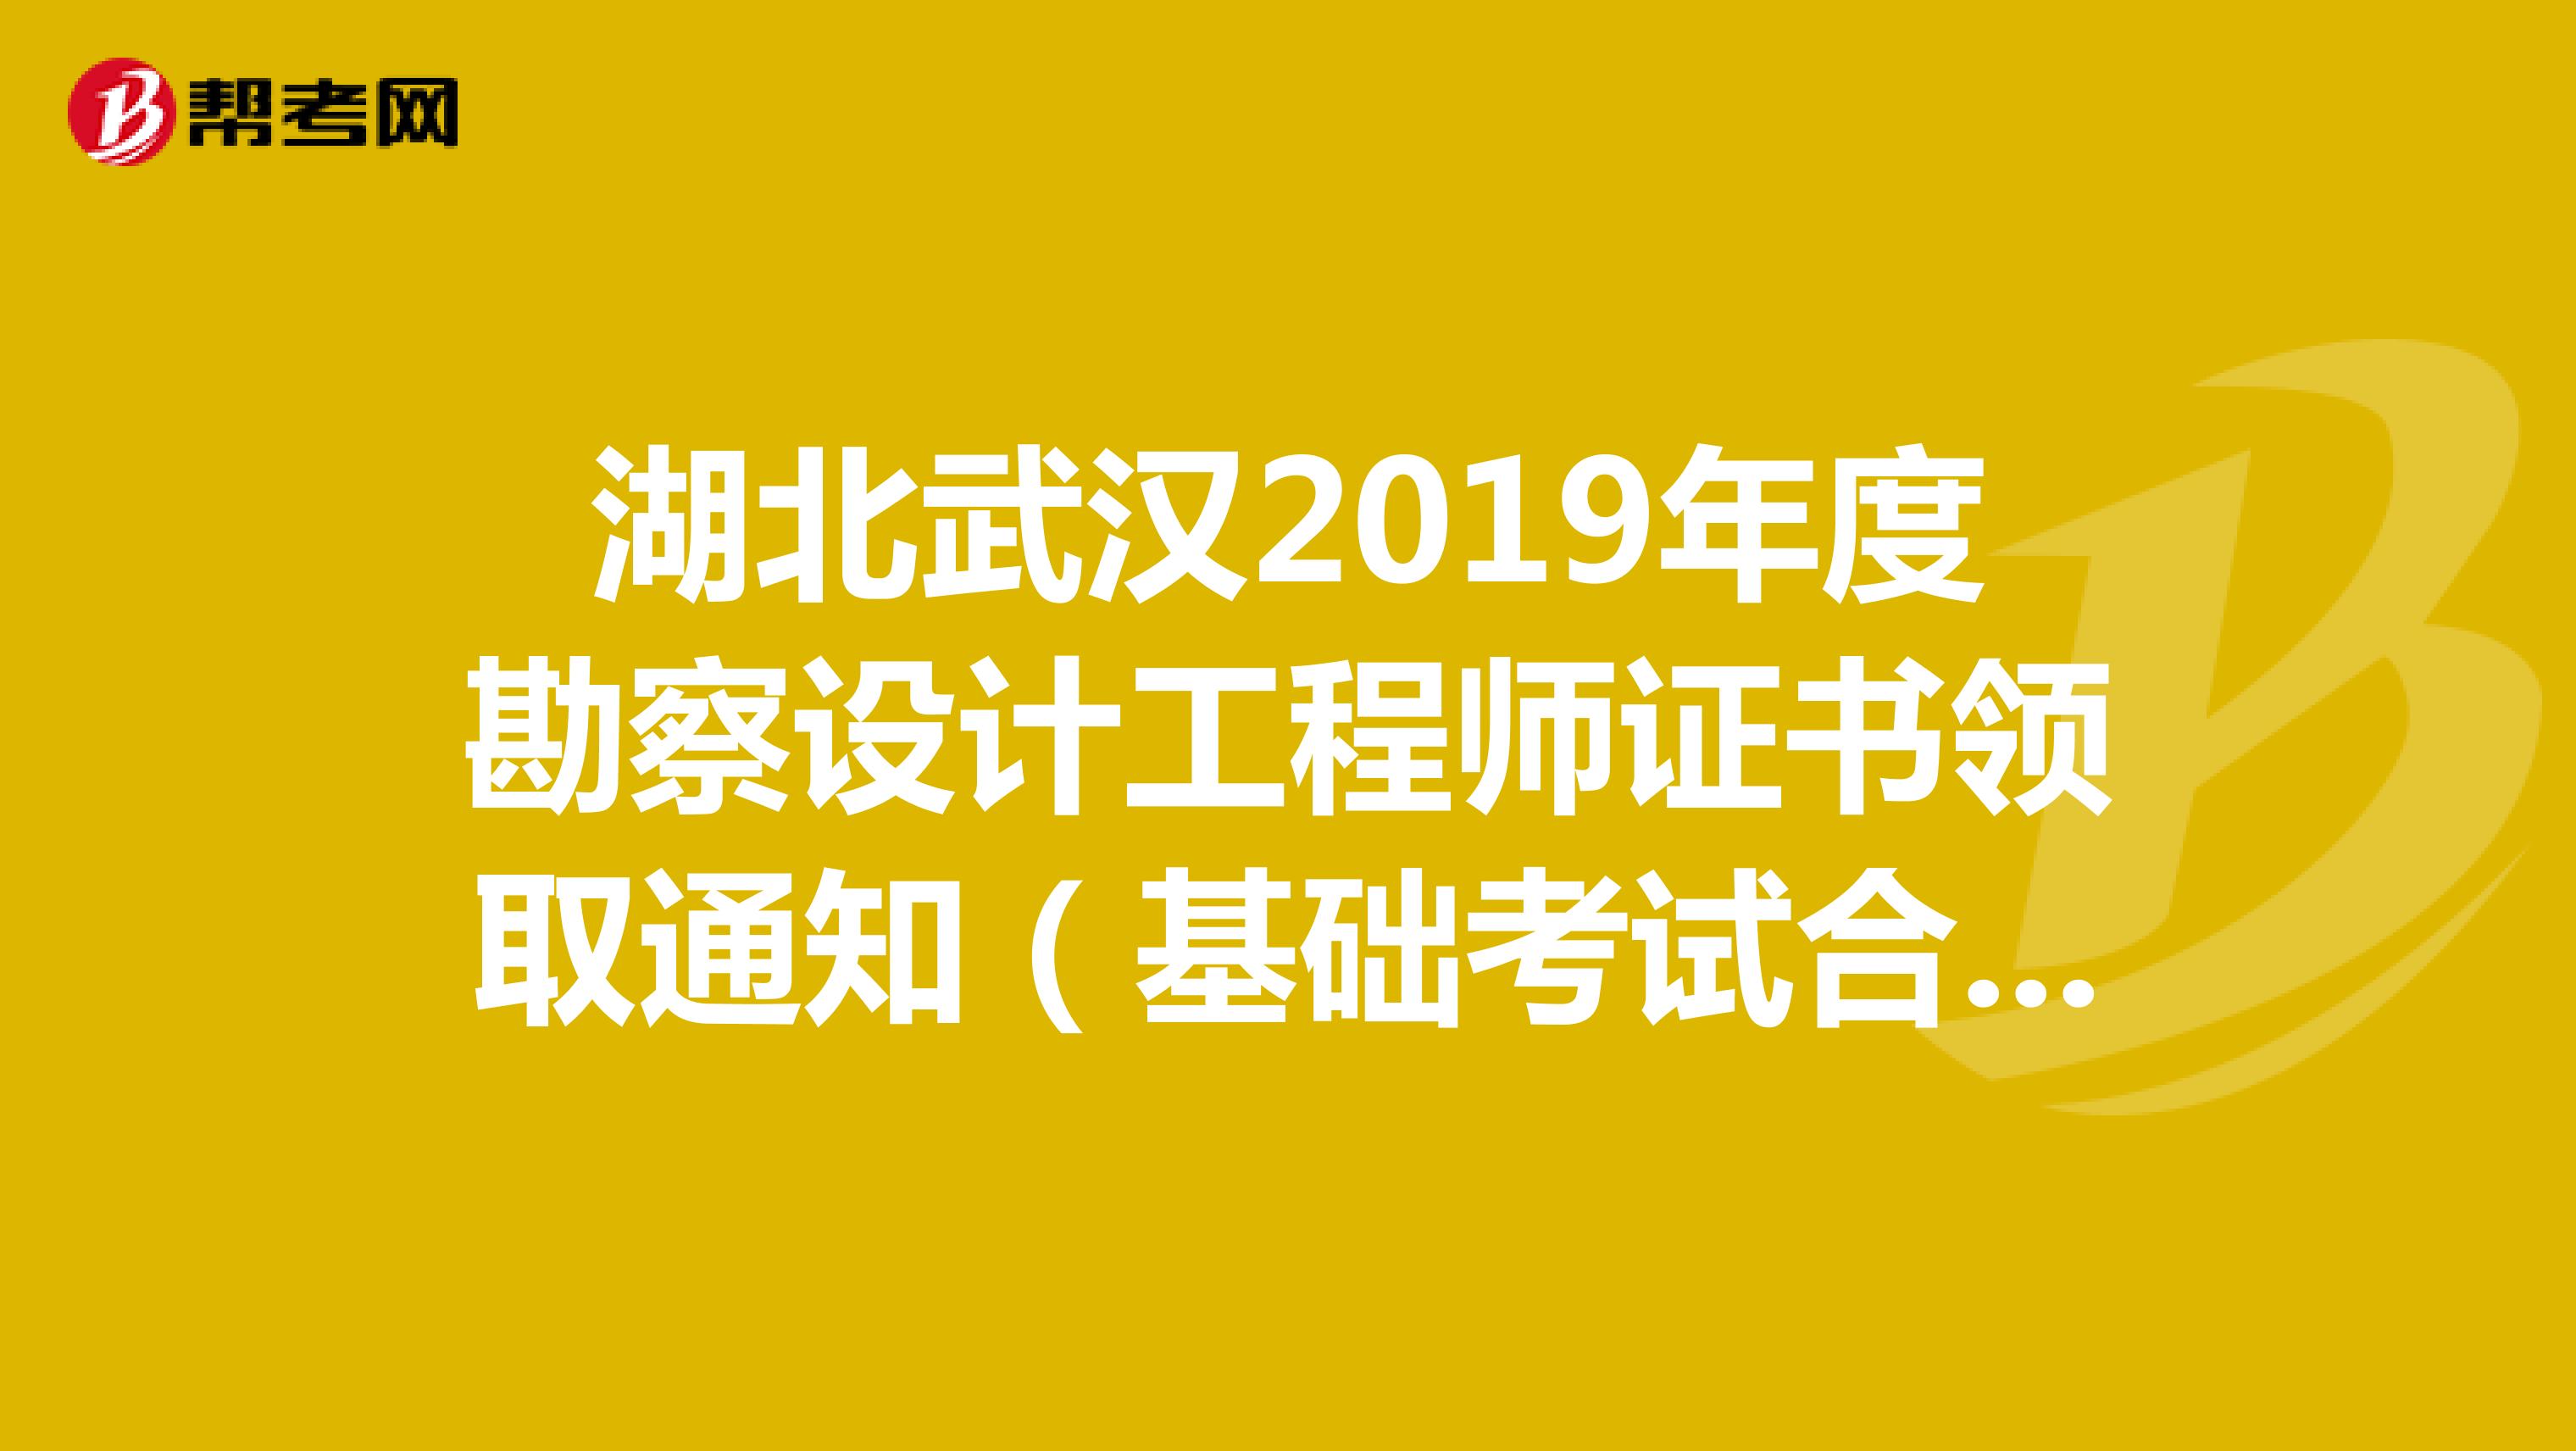 湖北武汉2019年度勘察设计工程师证书领取通知（基础考试合格）